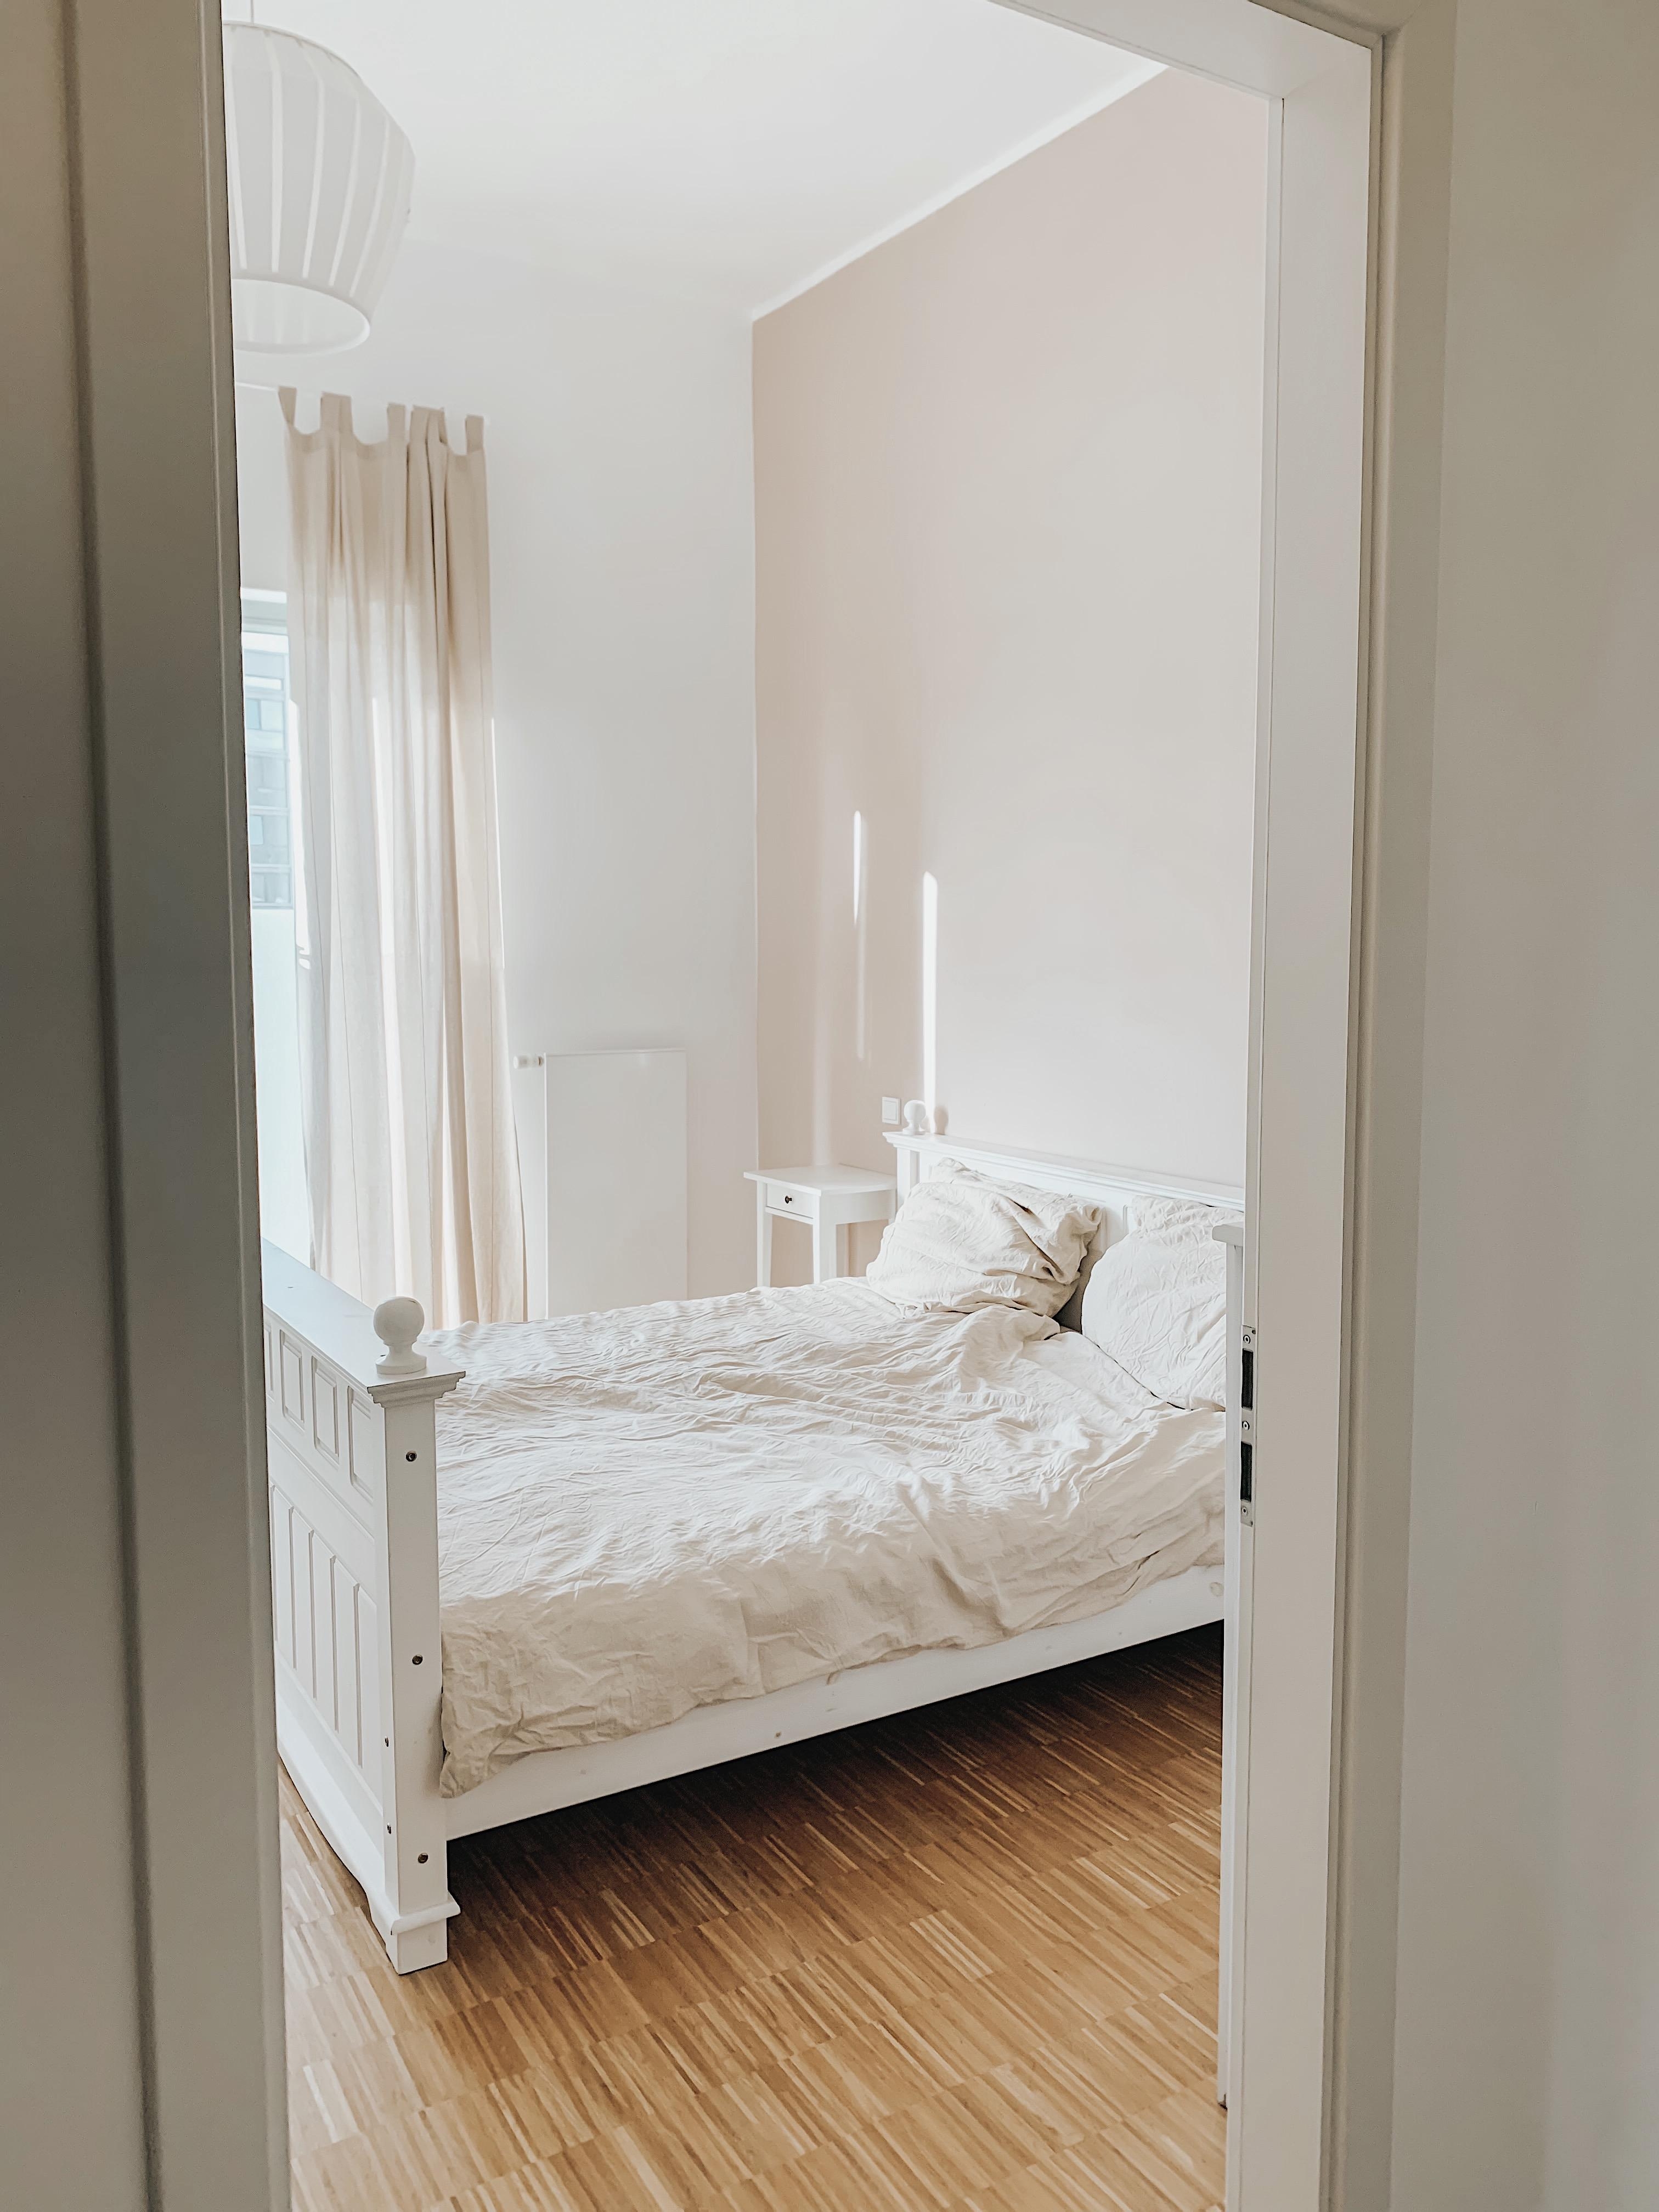 Unser #schlafzimmer #minimalistisch #gemütlich #hygge